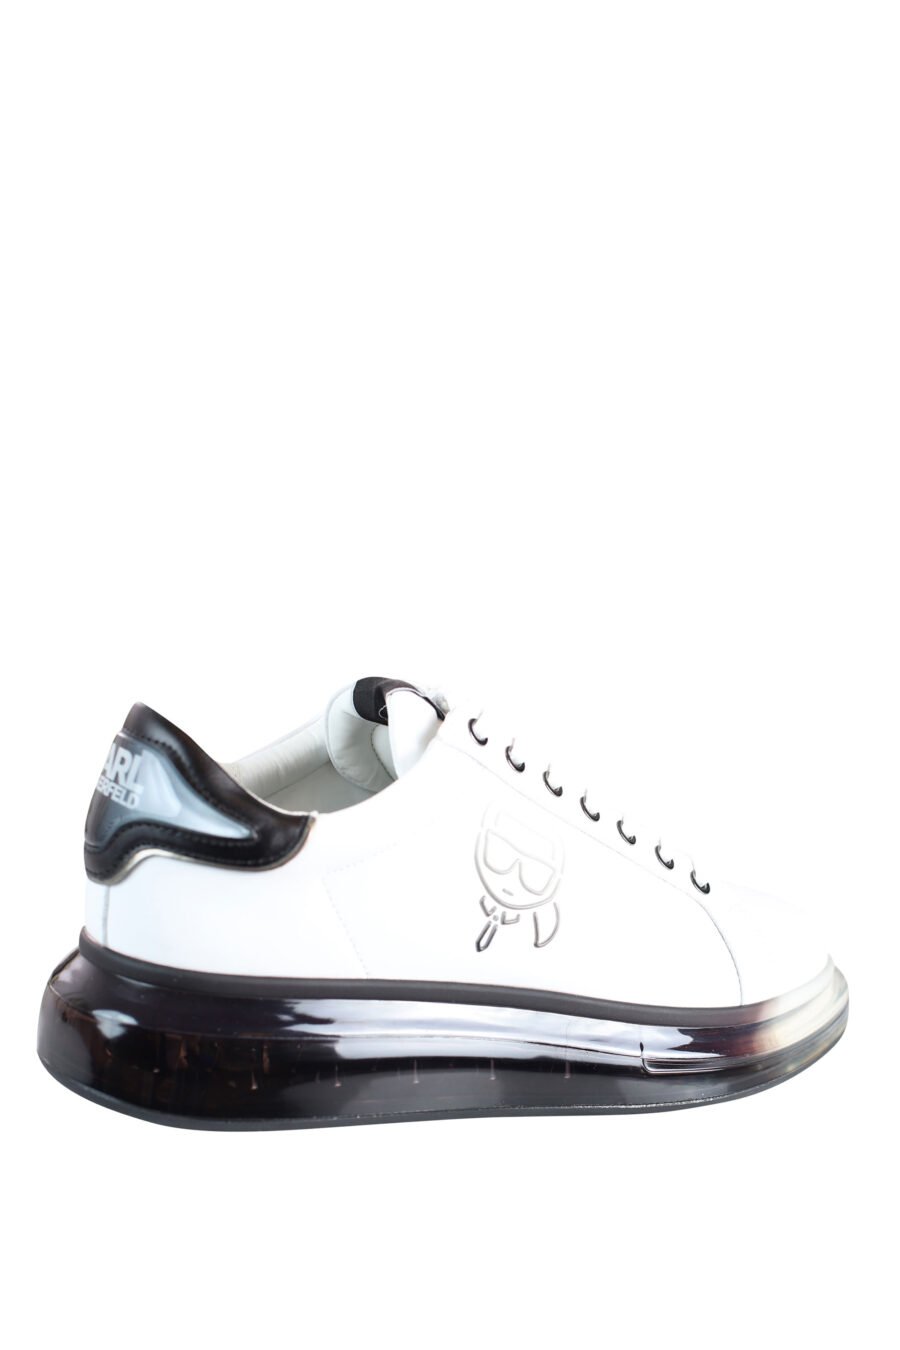 Zapatillas blancas con suela negra y logo degrade gris en silueta - IMG 0038